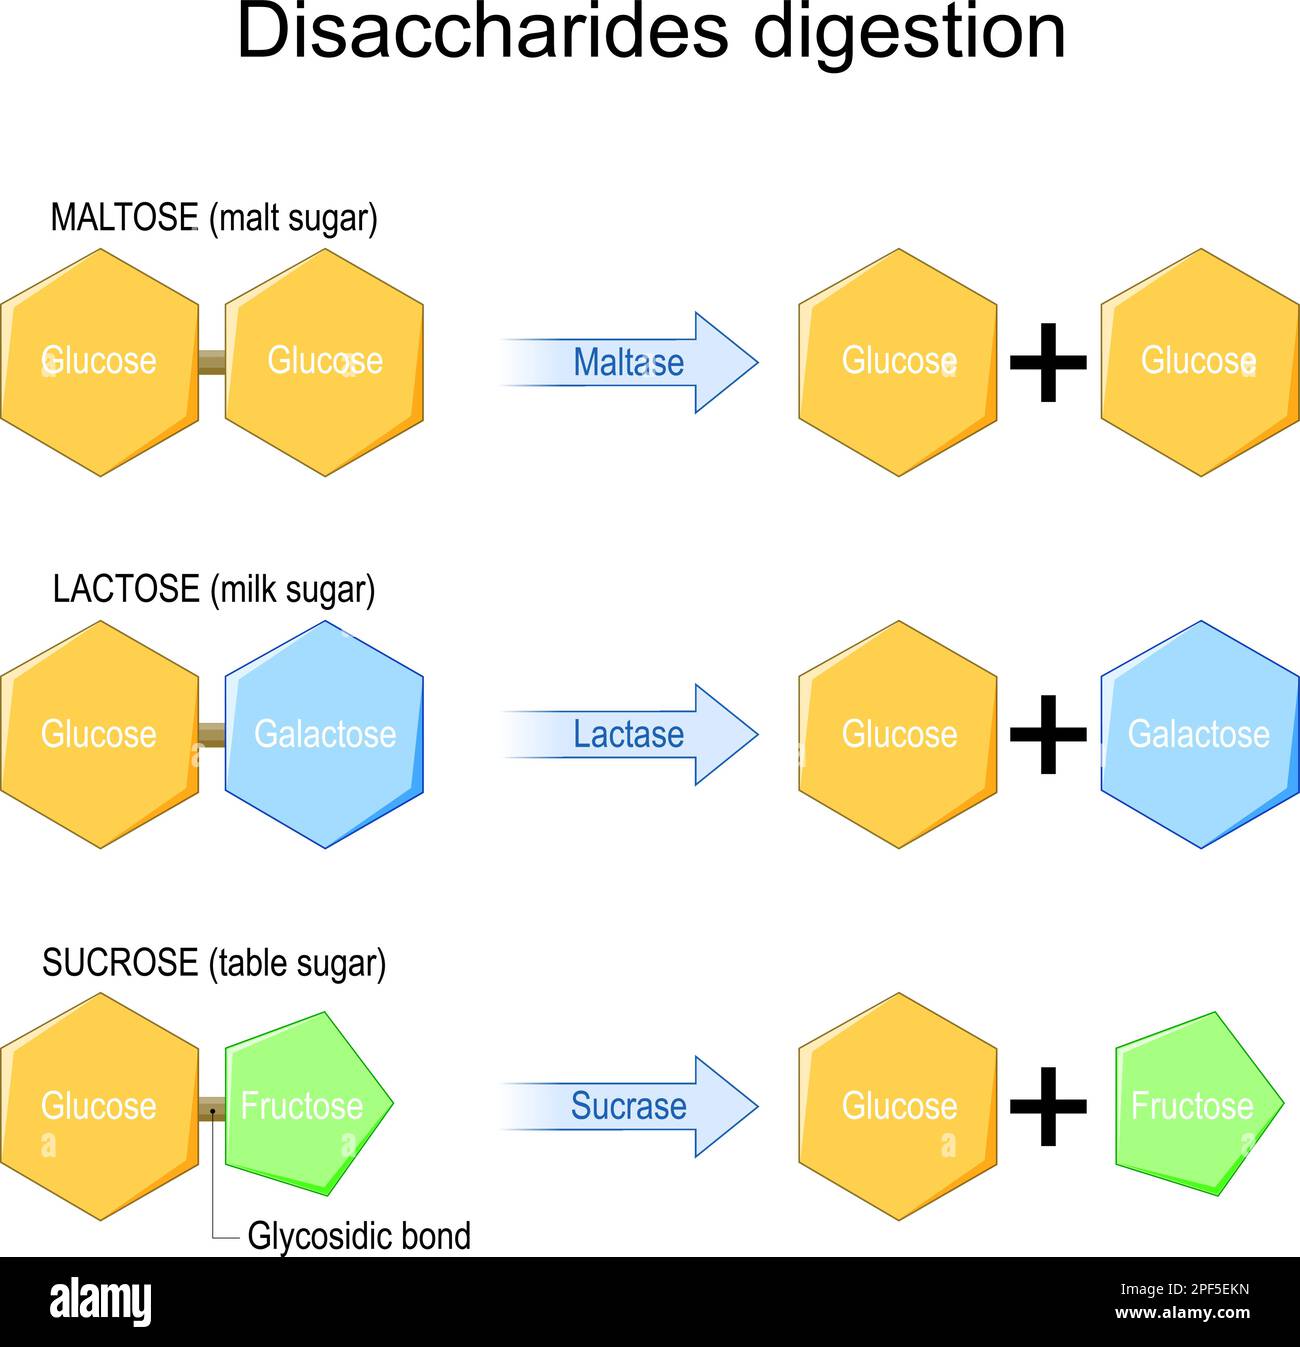 Digestion des disaccharides. Les enzymes ont un effet sur les molécules de disaccharides. réaction chimique. Saccharose, lactose, maltose et fructose, galactose, Et glucose Illustration de Vecteur